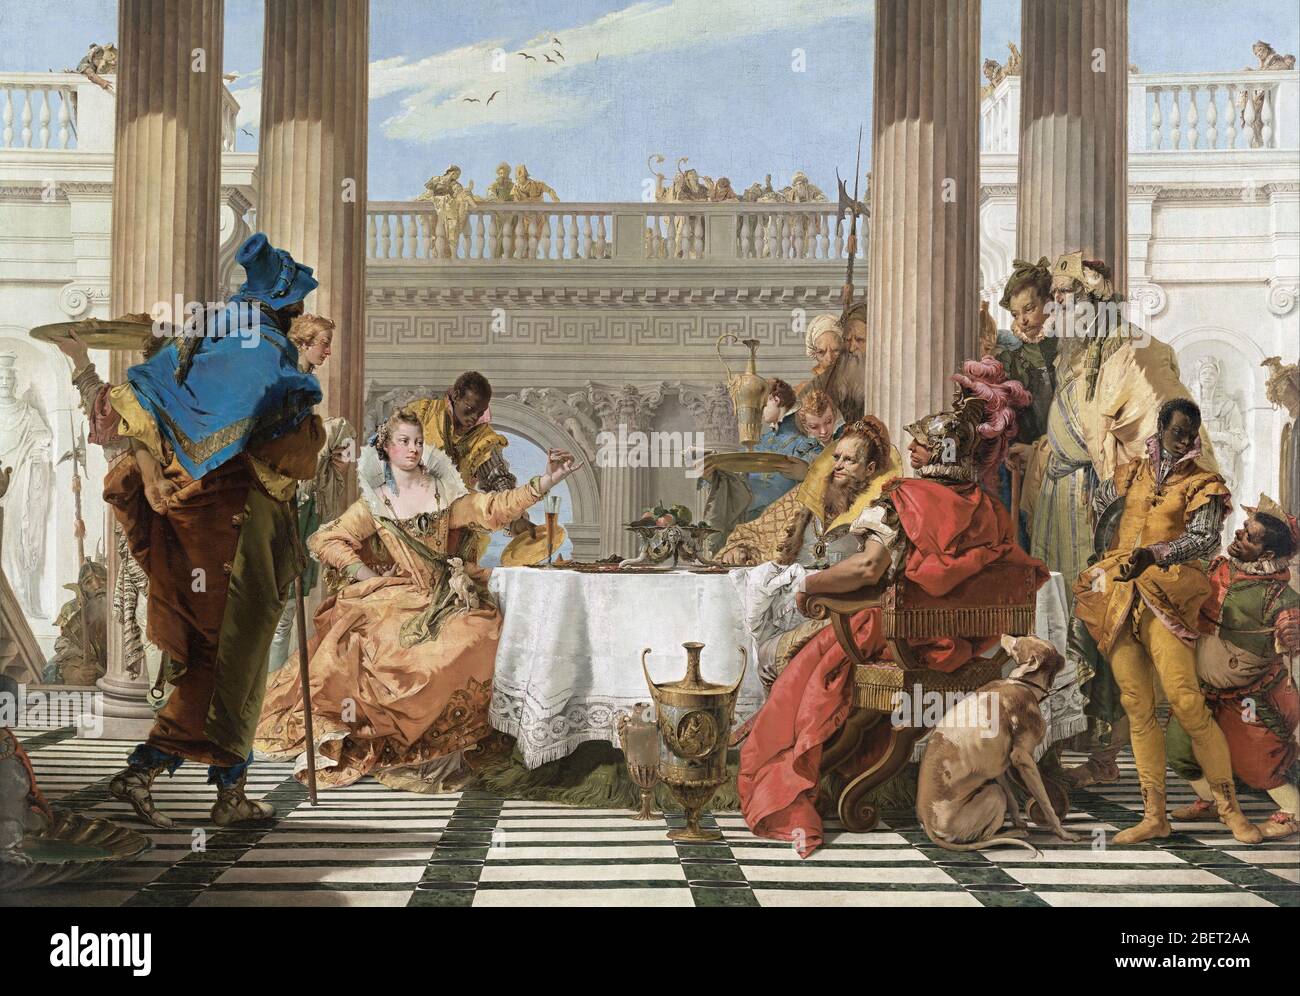 Il banchetto della pittura ad olio di Cleopatro raffigura la regina egiziana Cleopatra che ha una festa sontuosa. Foto Stock